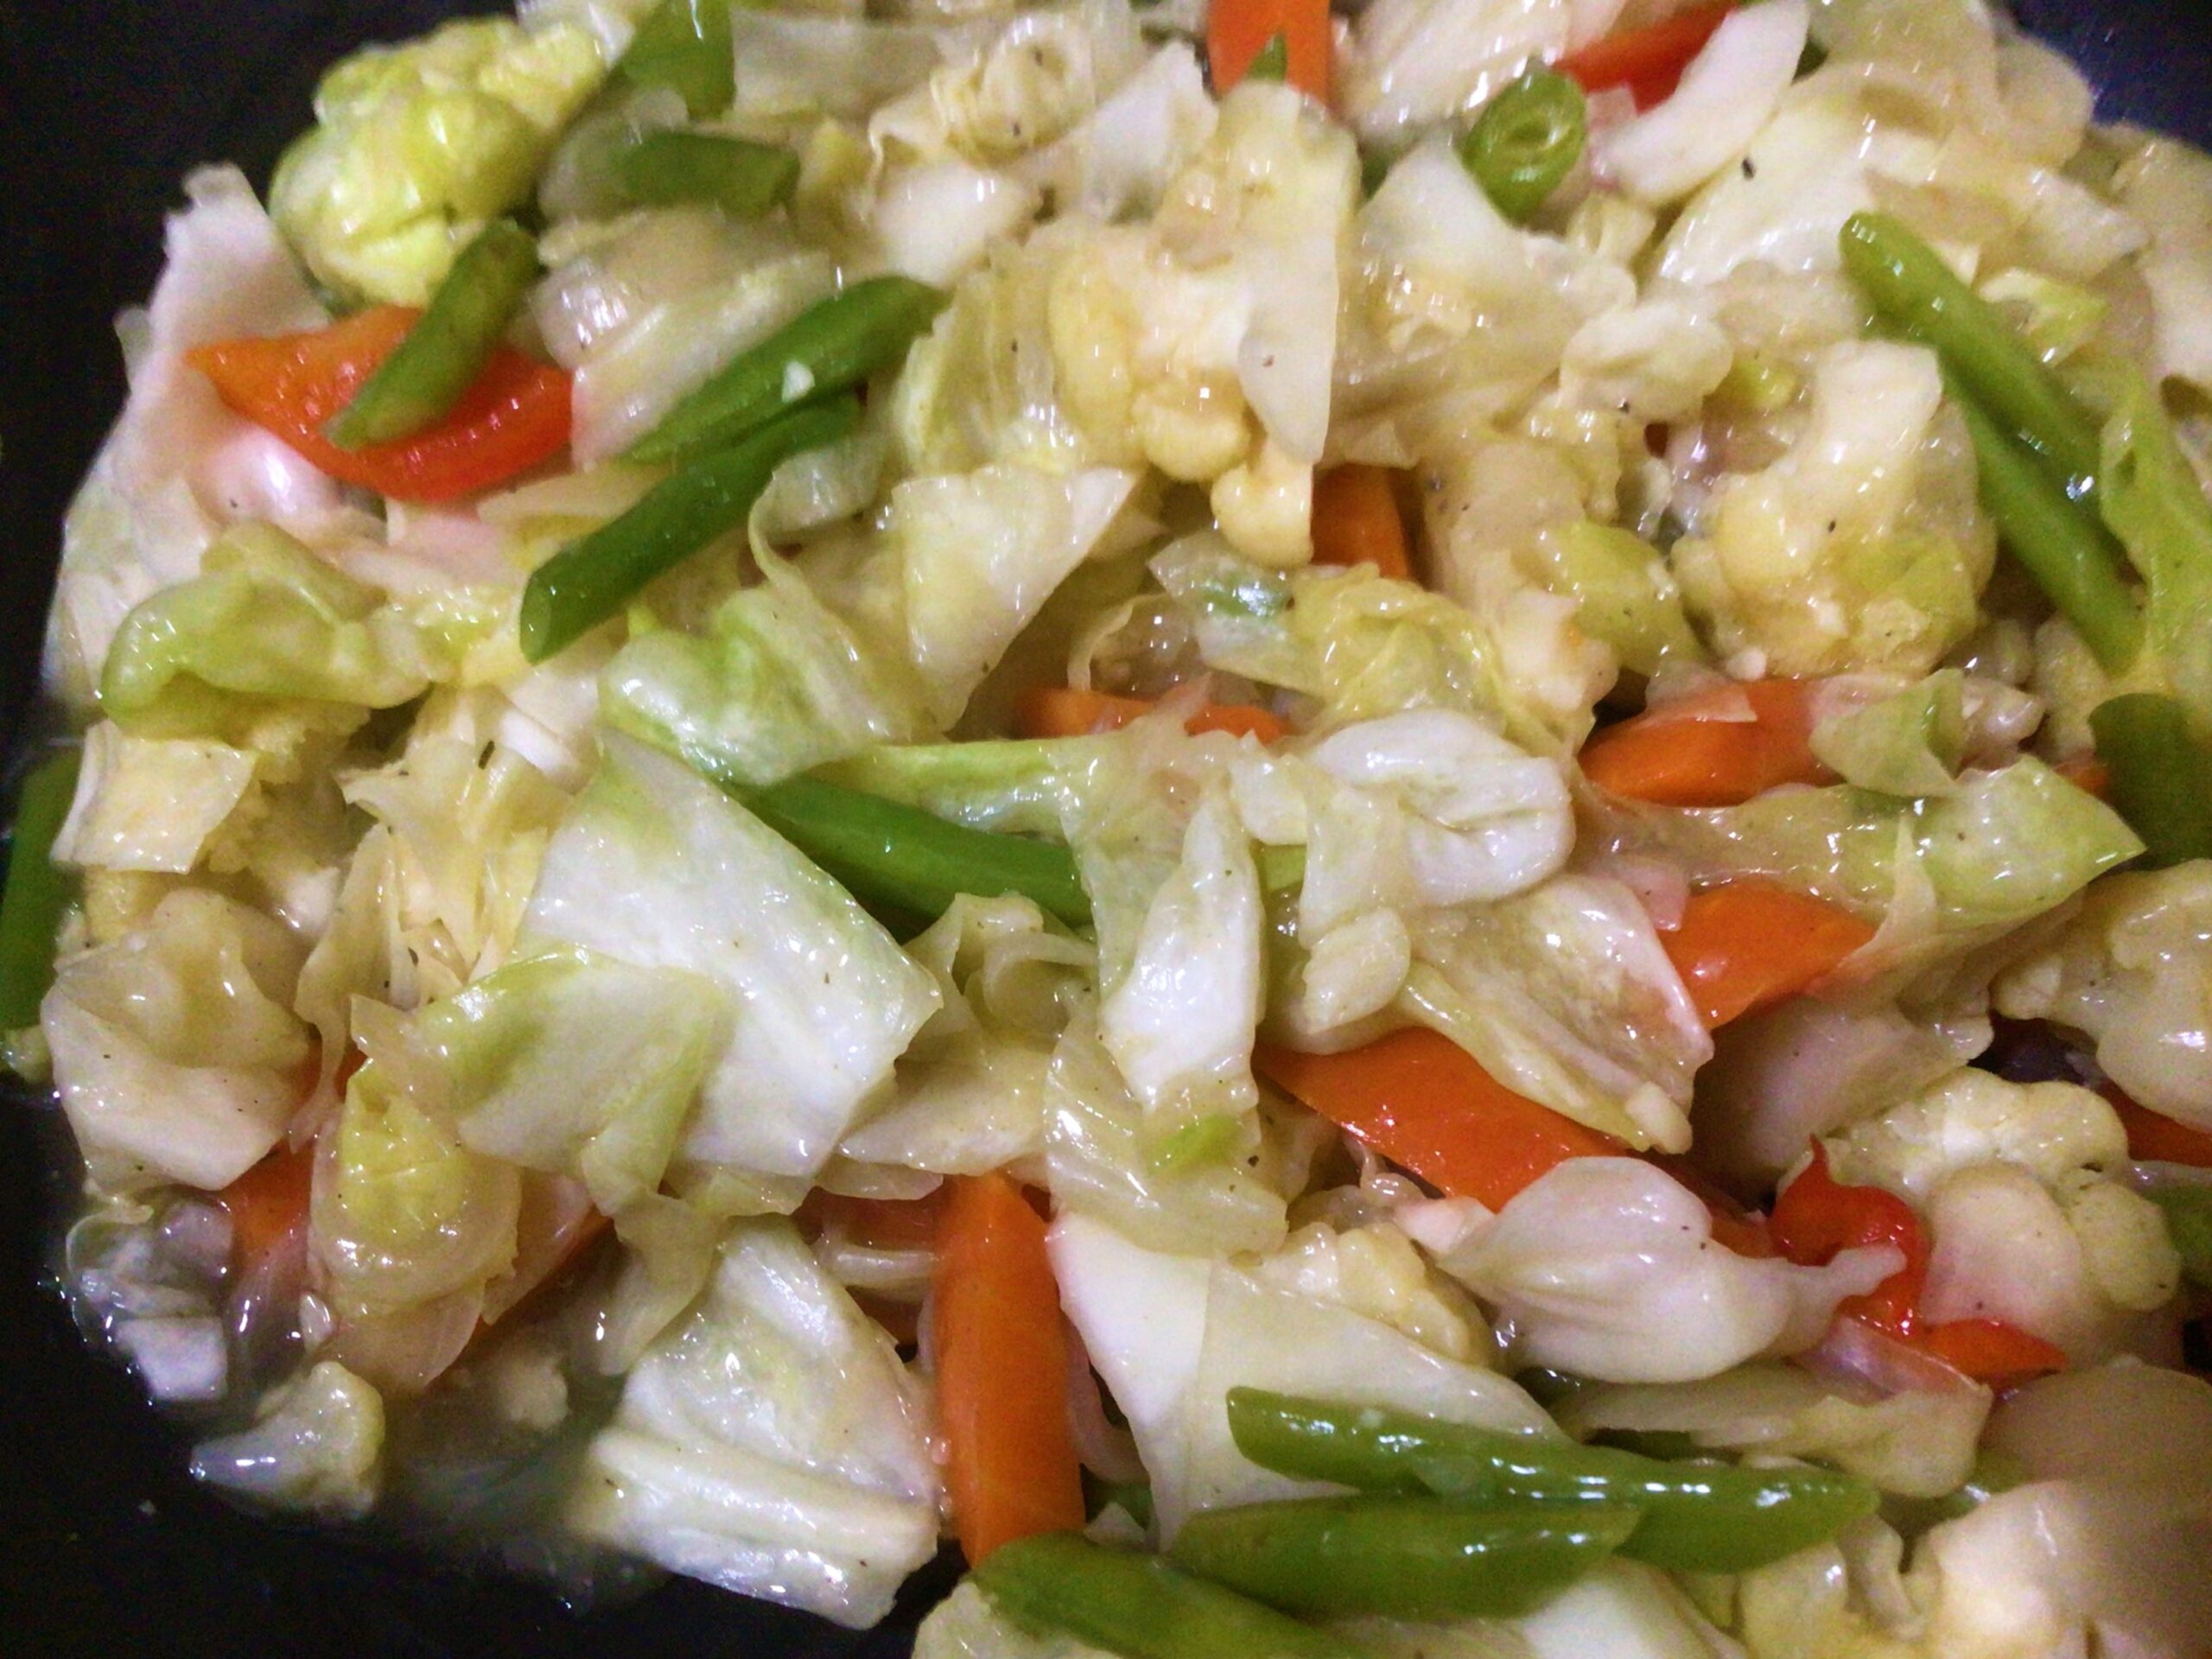 Vegetable chop suey